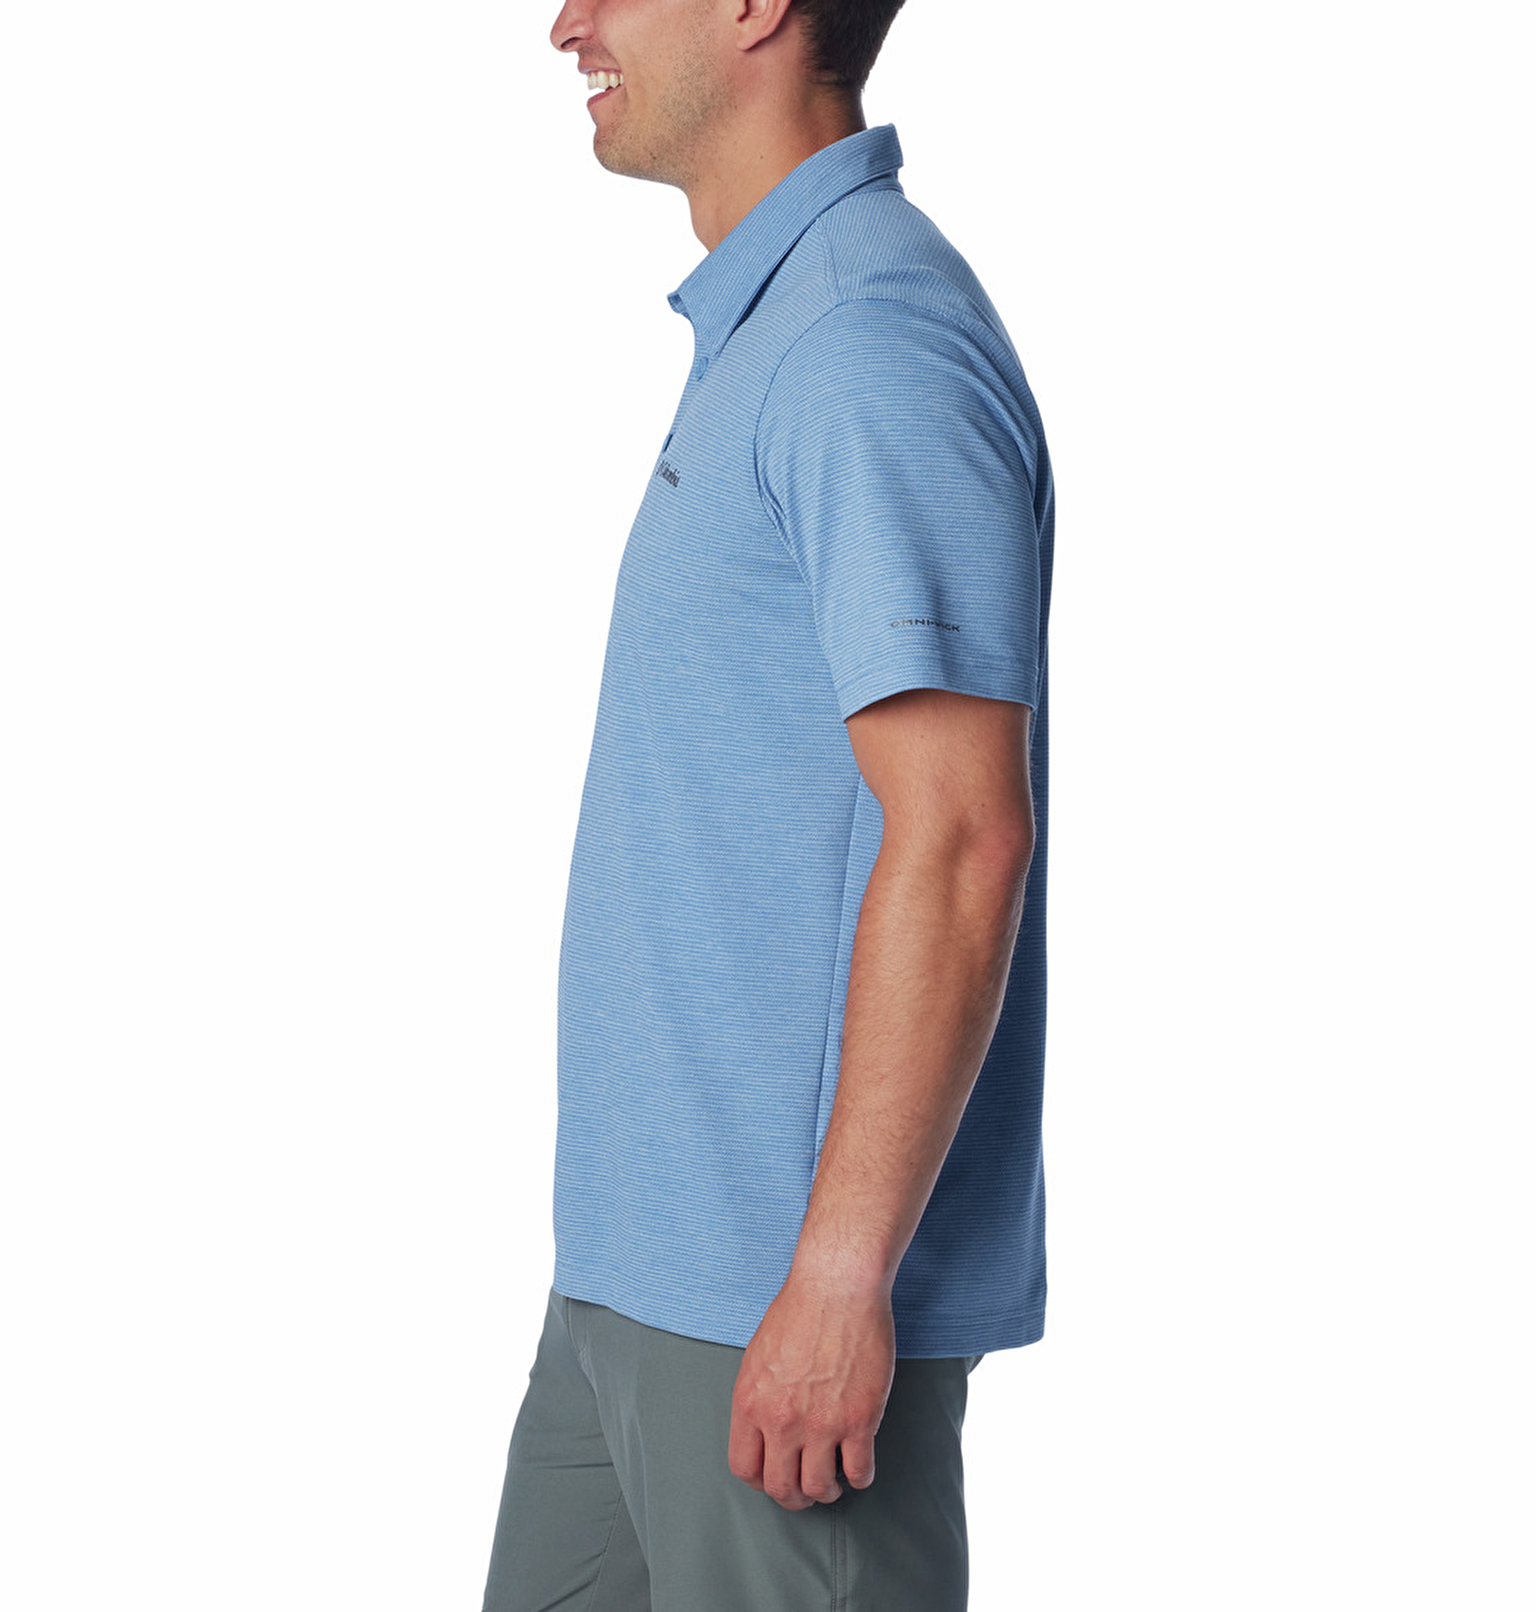 Havercamp Pique Erkek Kısa Kollu Polo T-Shirt